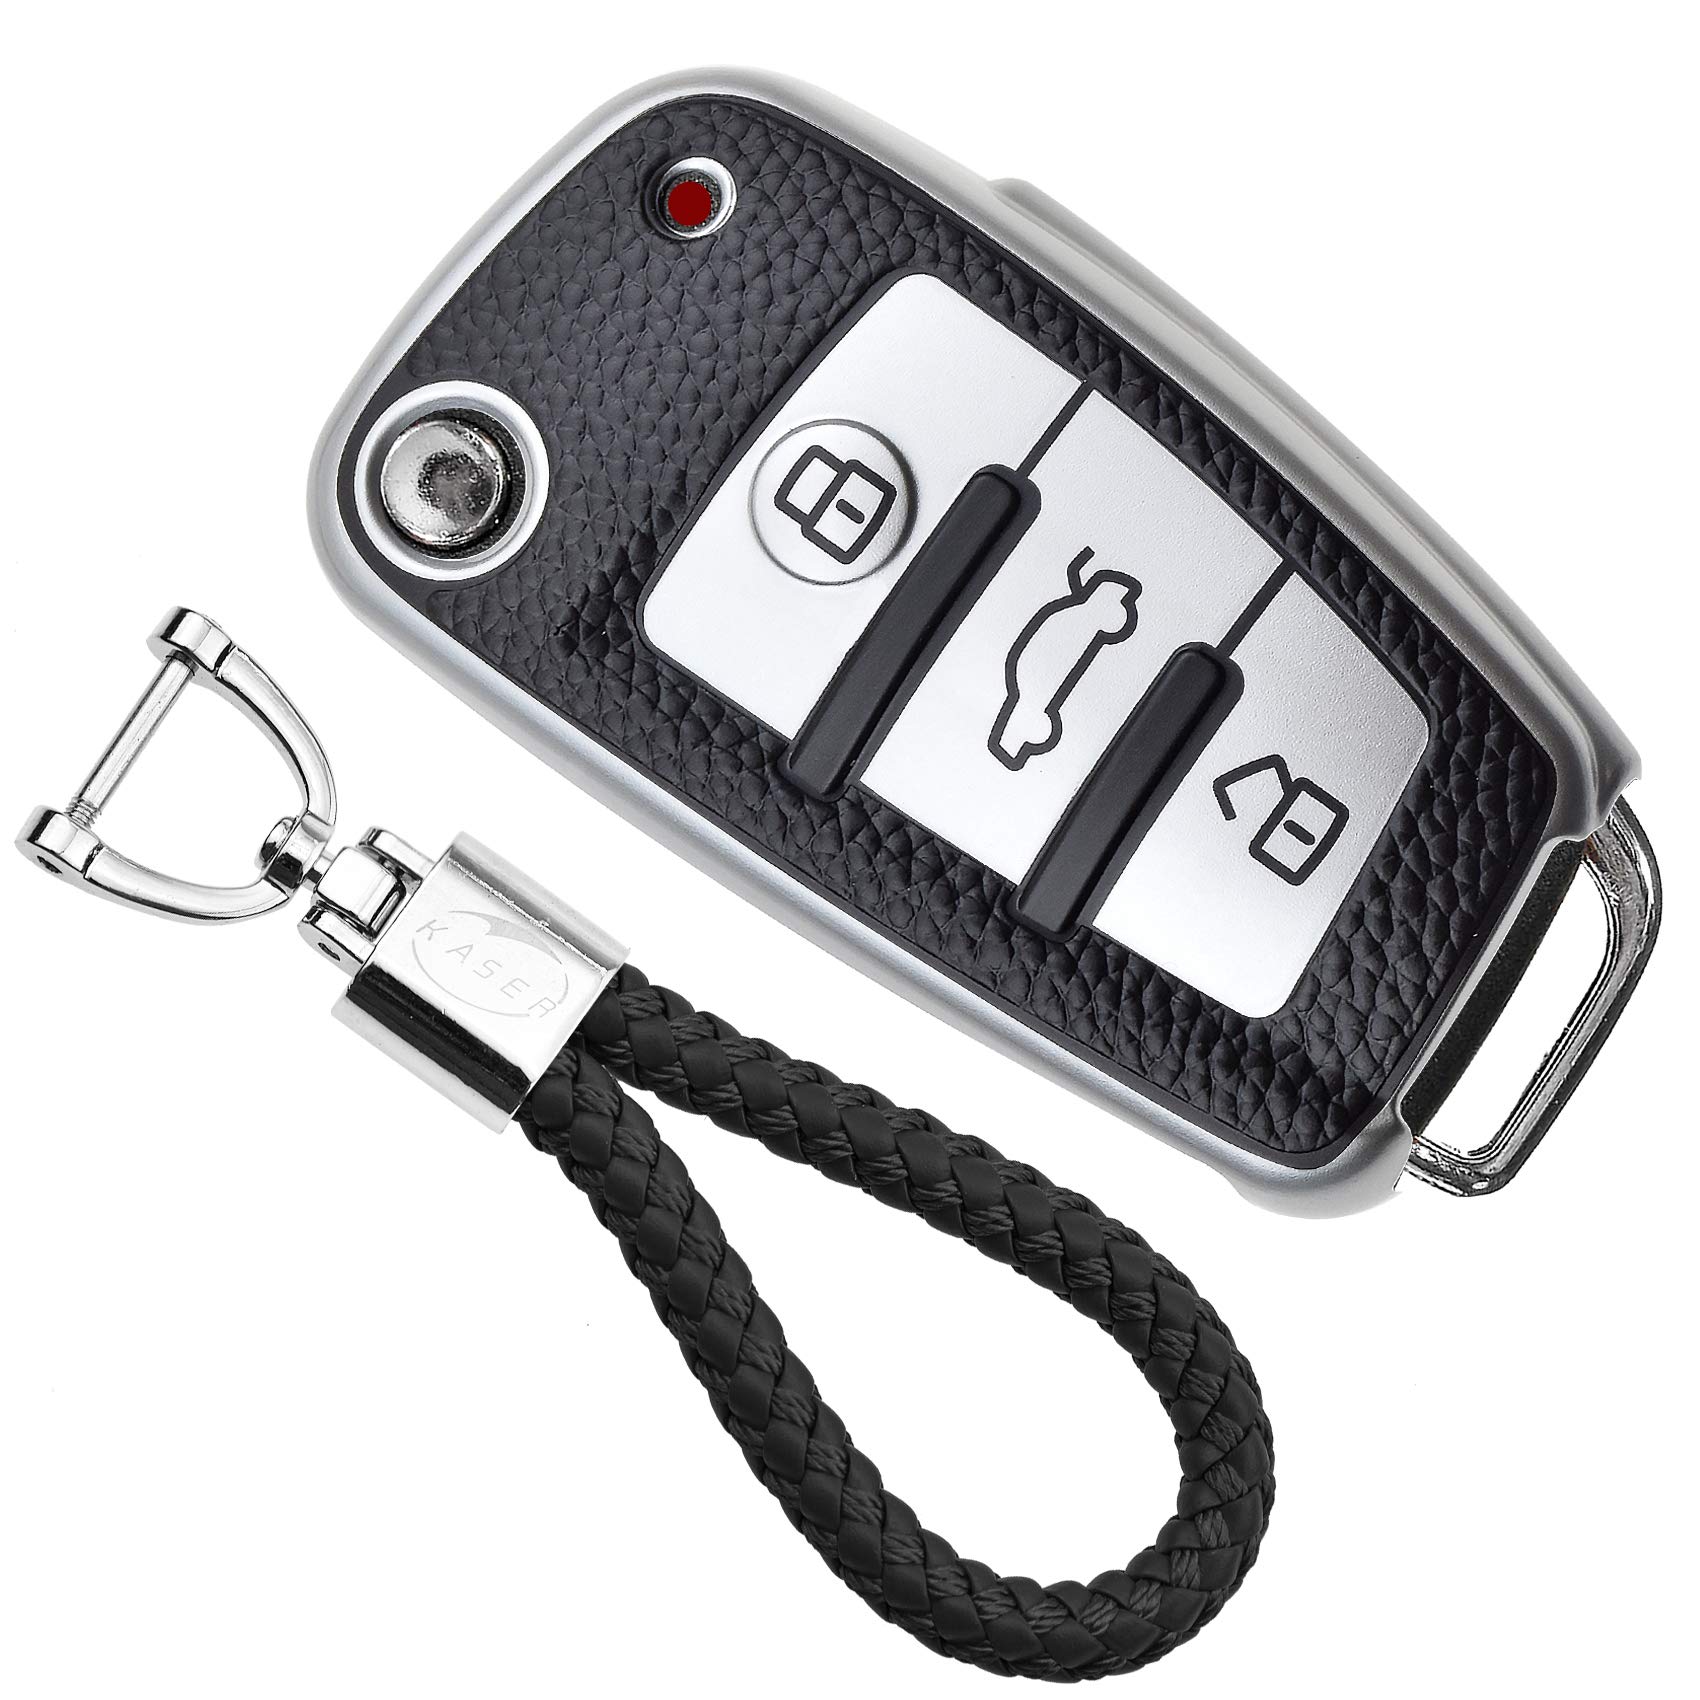 KASER Autoschlüssel Cover TPU Hülle kompatible für Audi A1 A2 A3 A4 A5 A7 Q1 Q3 Q5 TT Schlüsselanhänger Abdeckung Silikon Schutzhülle Ledereffekt (Silber) von Kaser